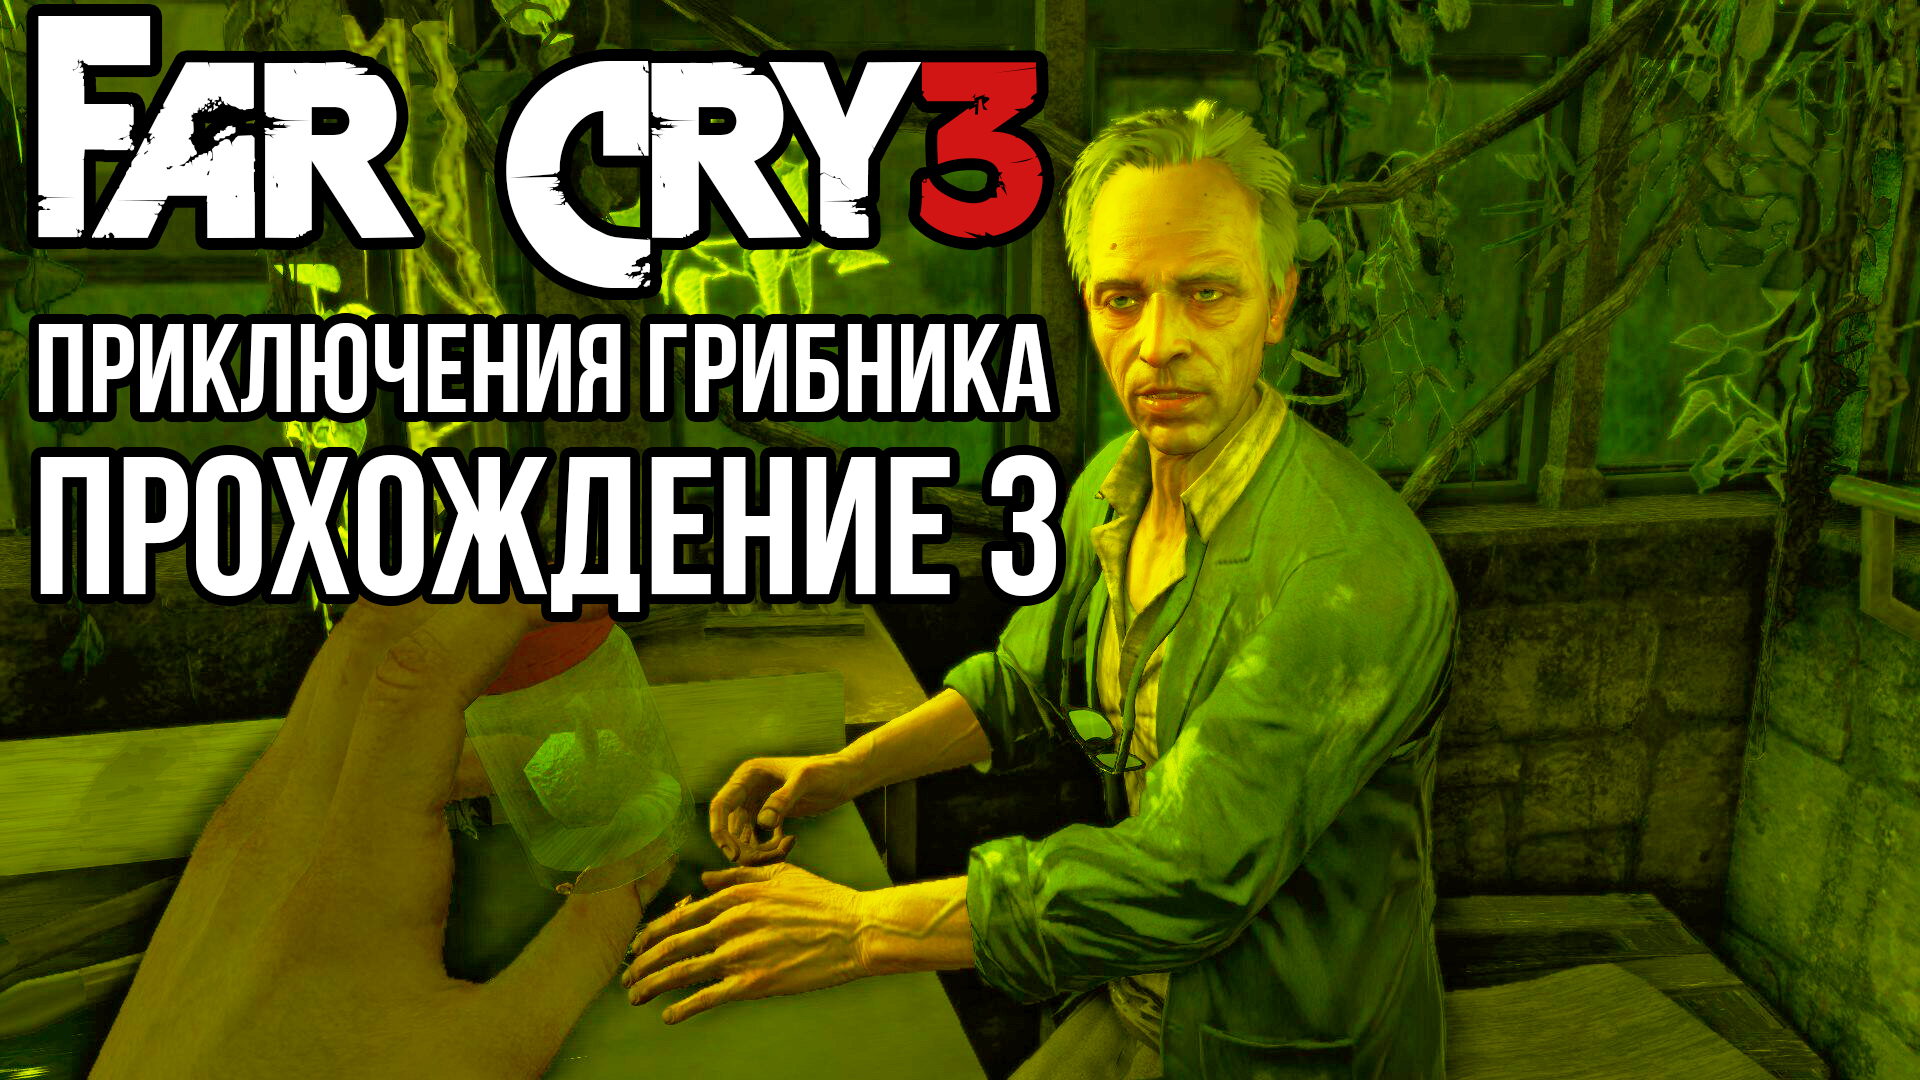 Far Cry 3. Приключения грибника. Прохождение #3